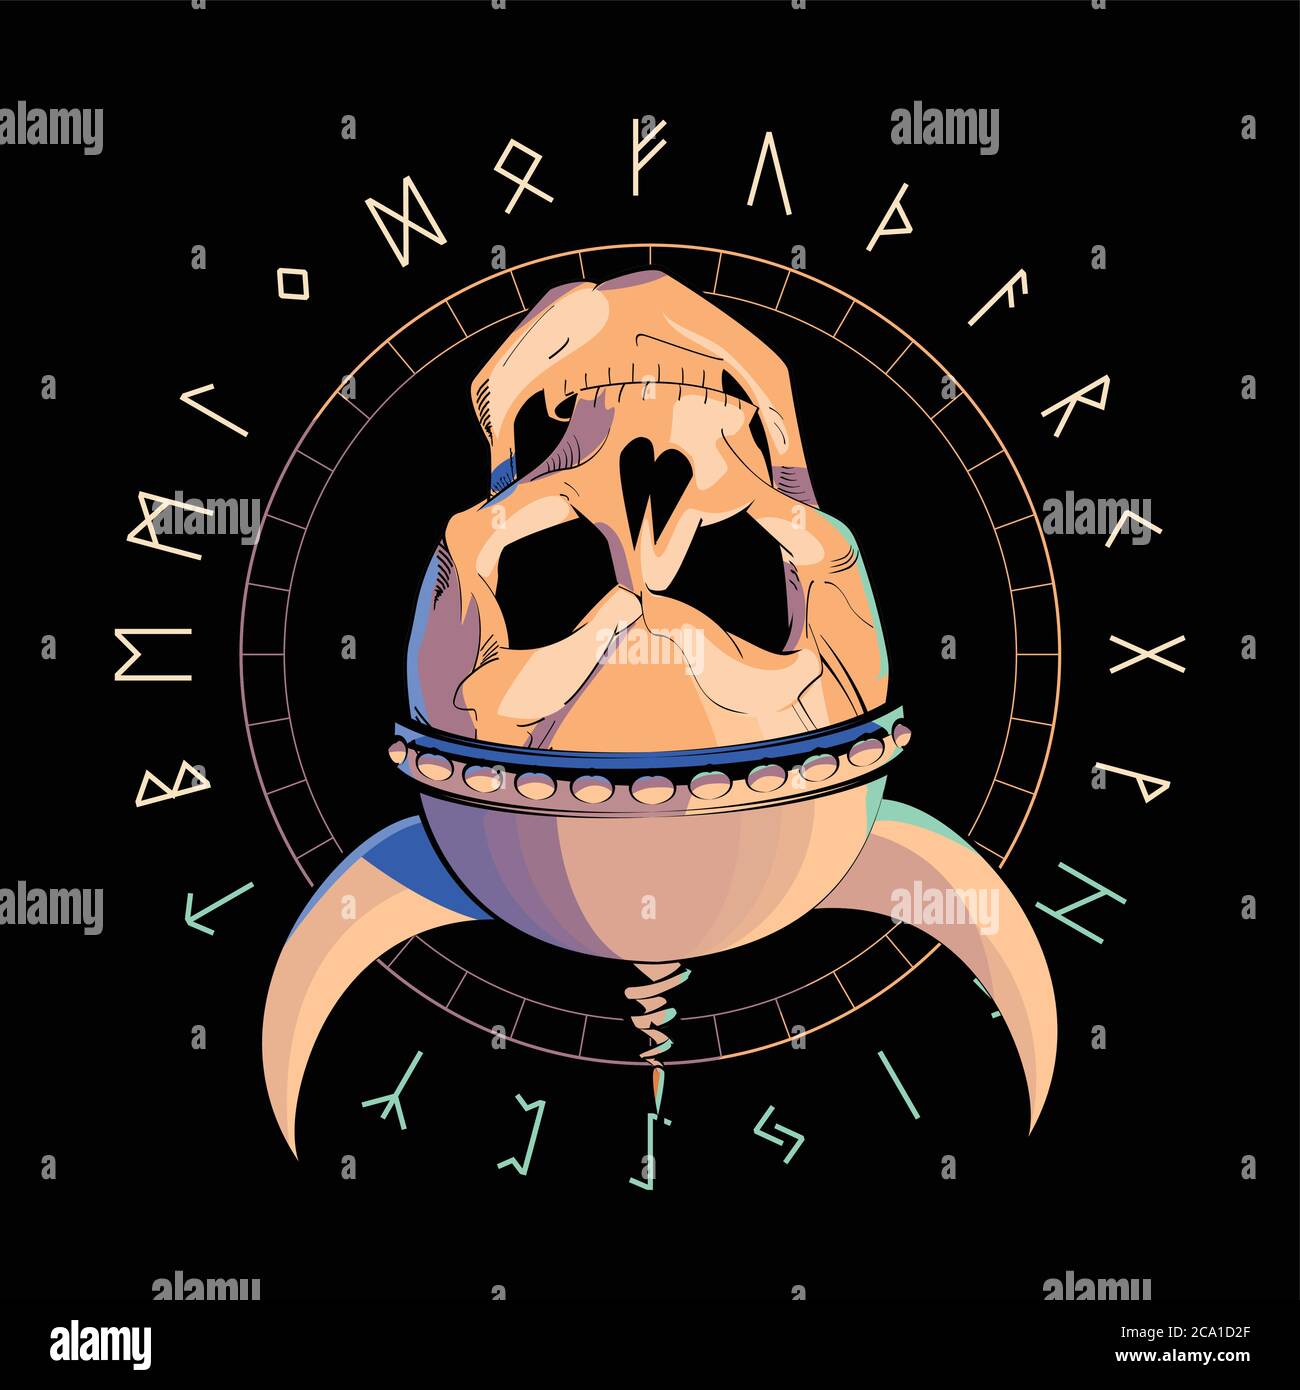 vektor-Illustration eines Schädels mit einem Helm auf den Kopf gestellt über einem invertierten Stern und Runenzeichen isoliert auf schwarz. Totenkopf Zeichnung für t-shir Stock Vektor